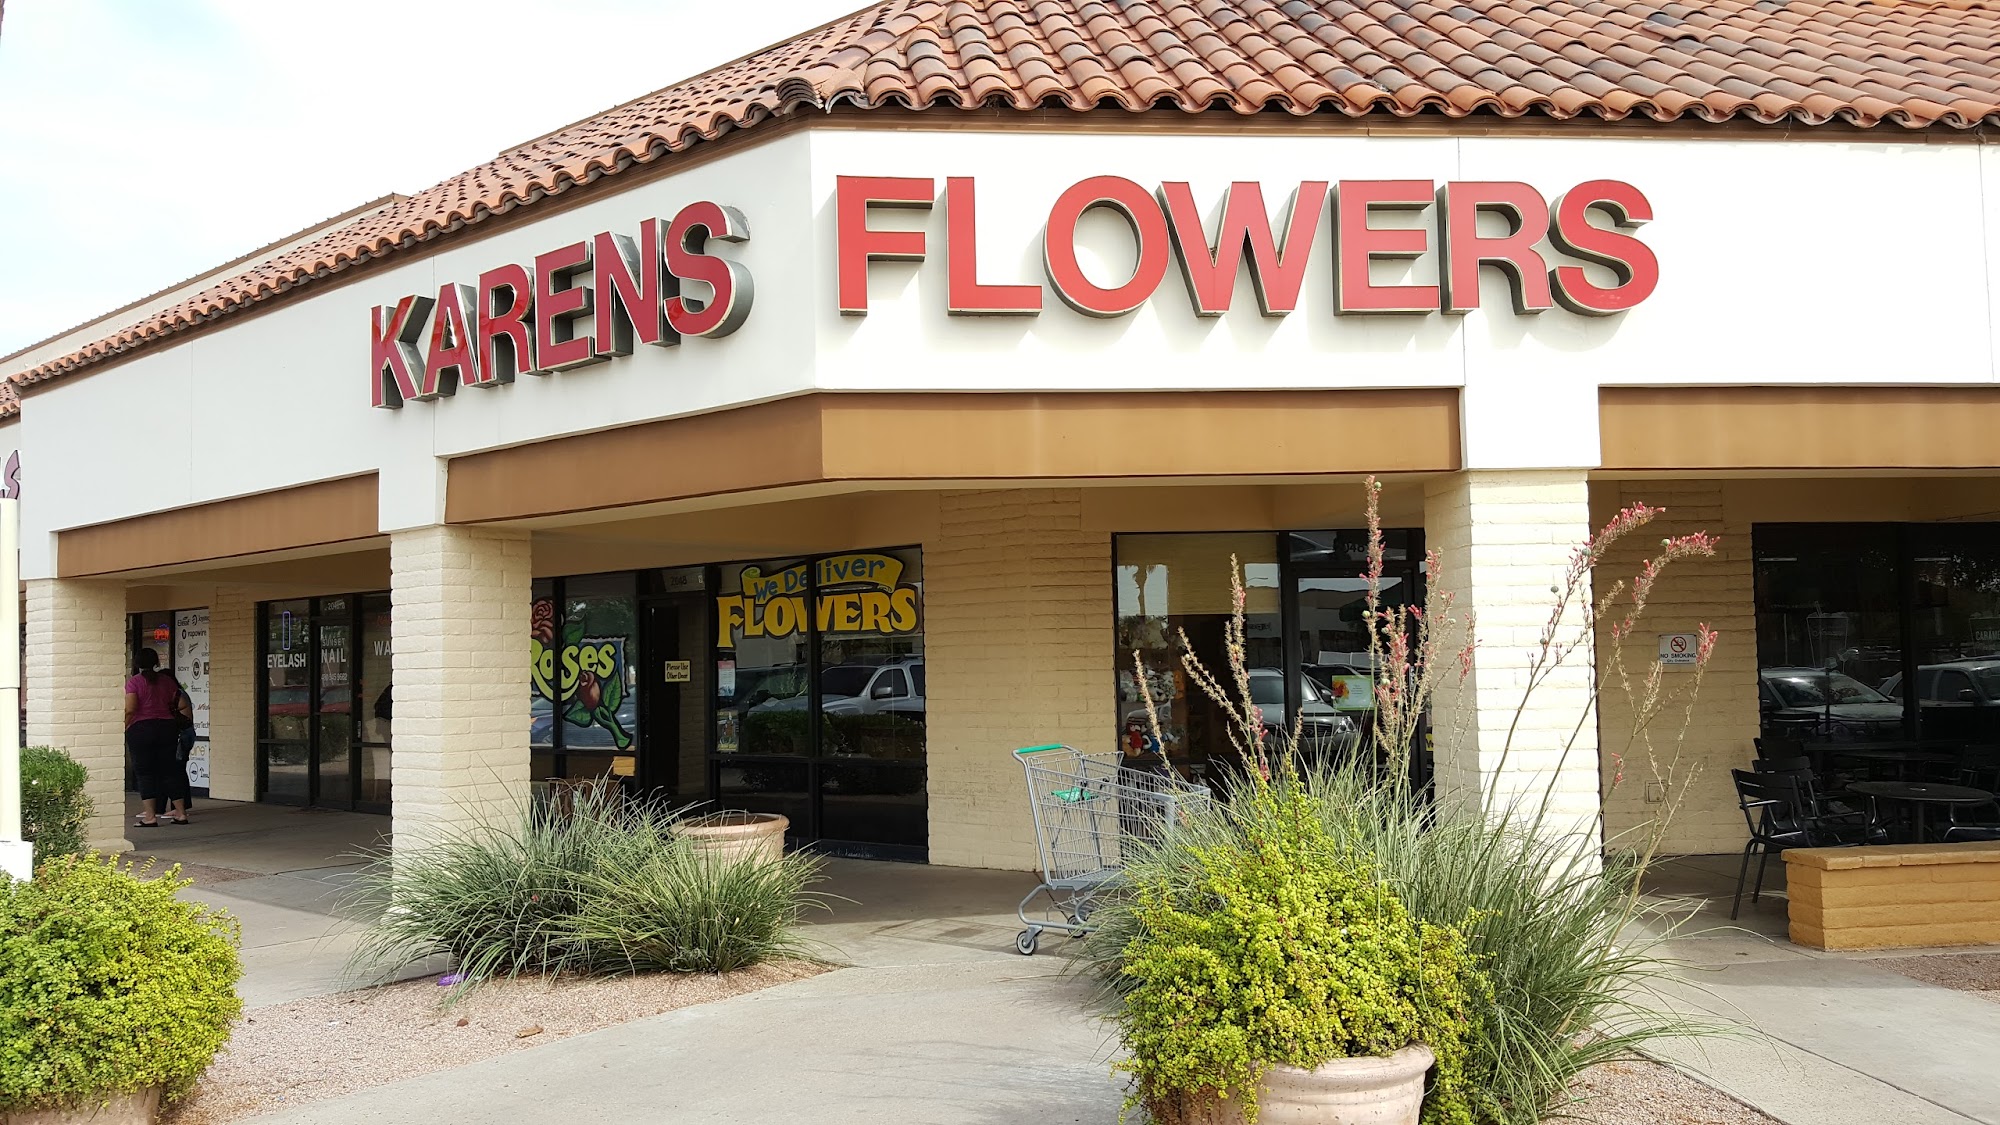 Karen's Flowers